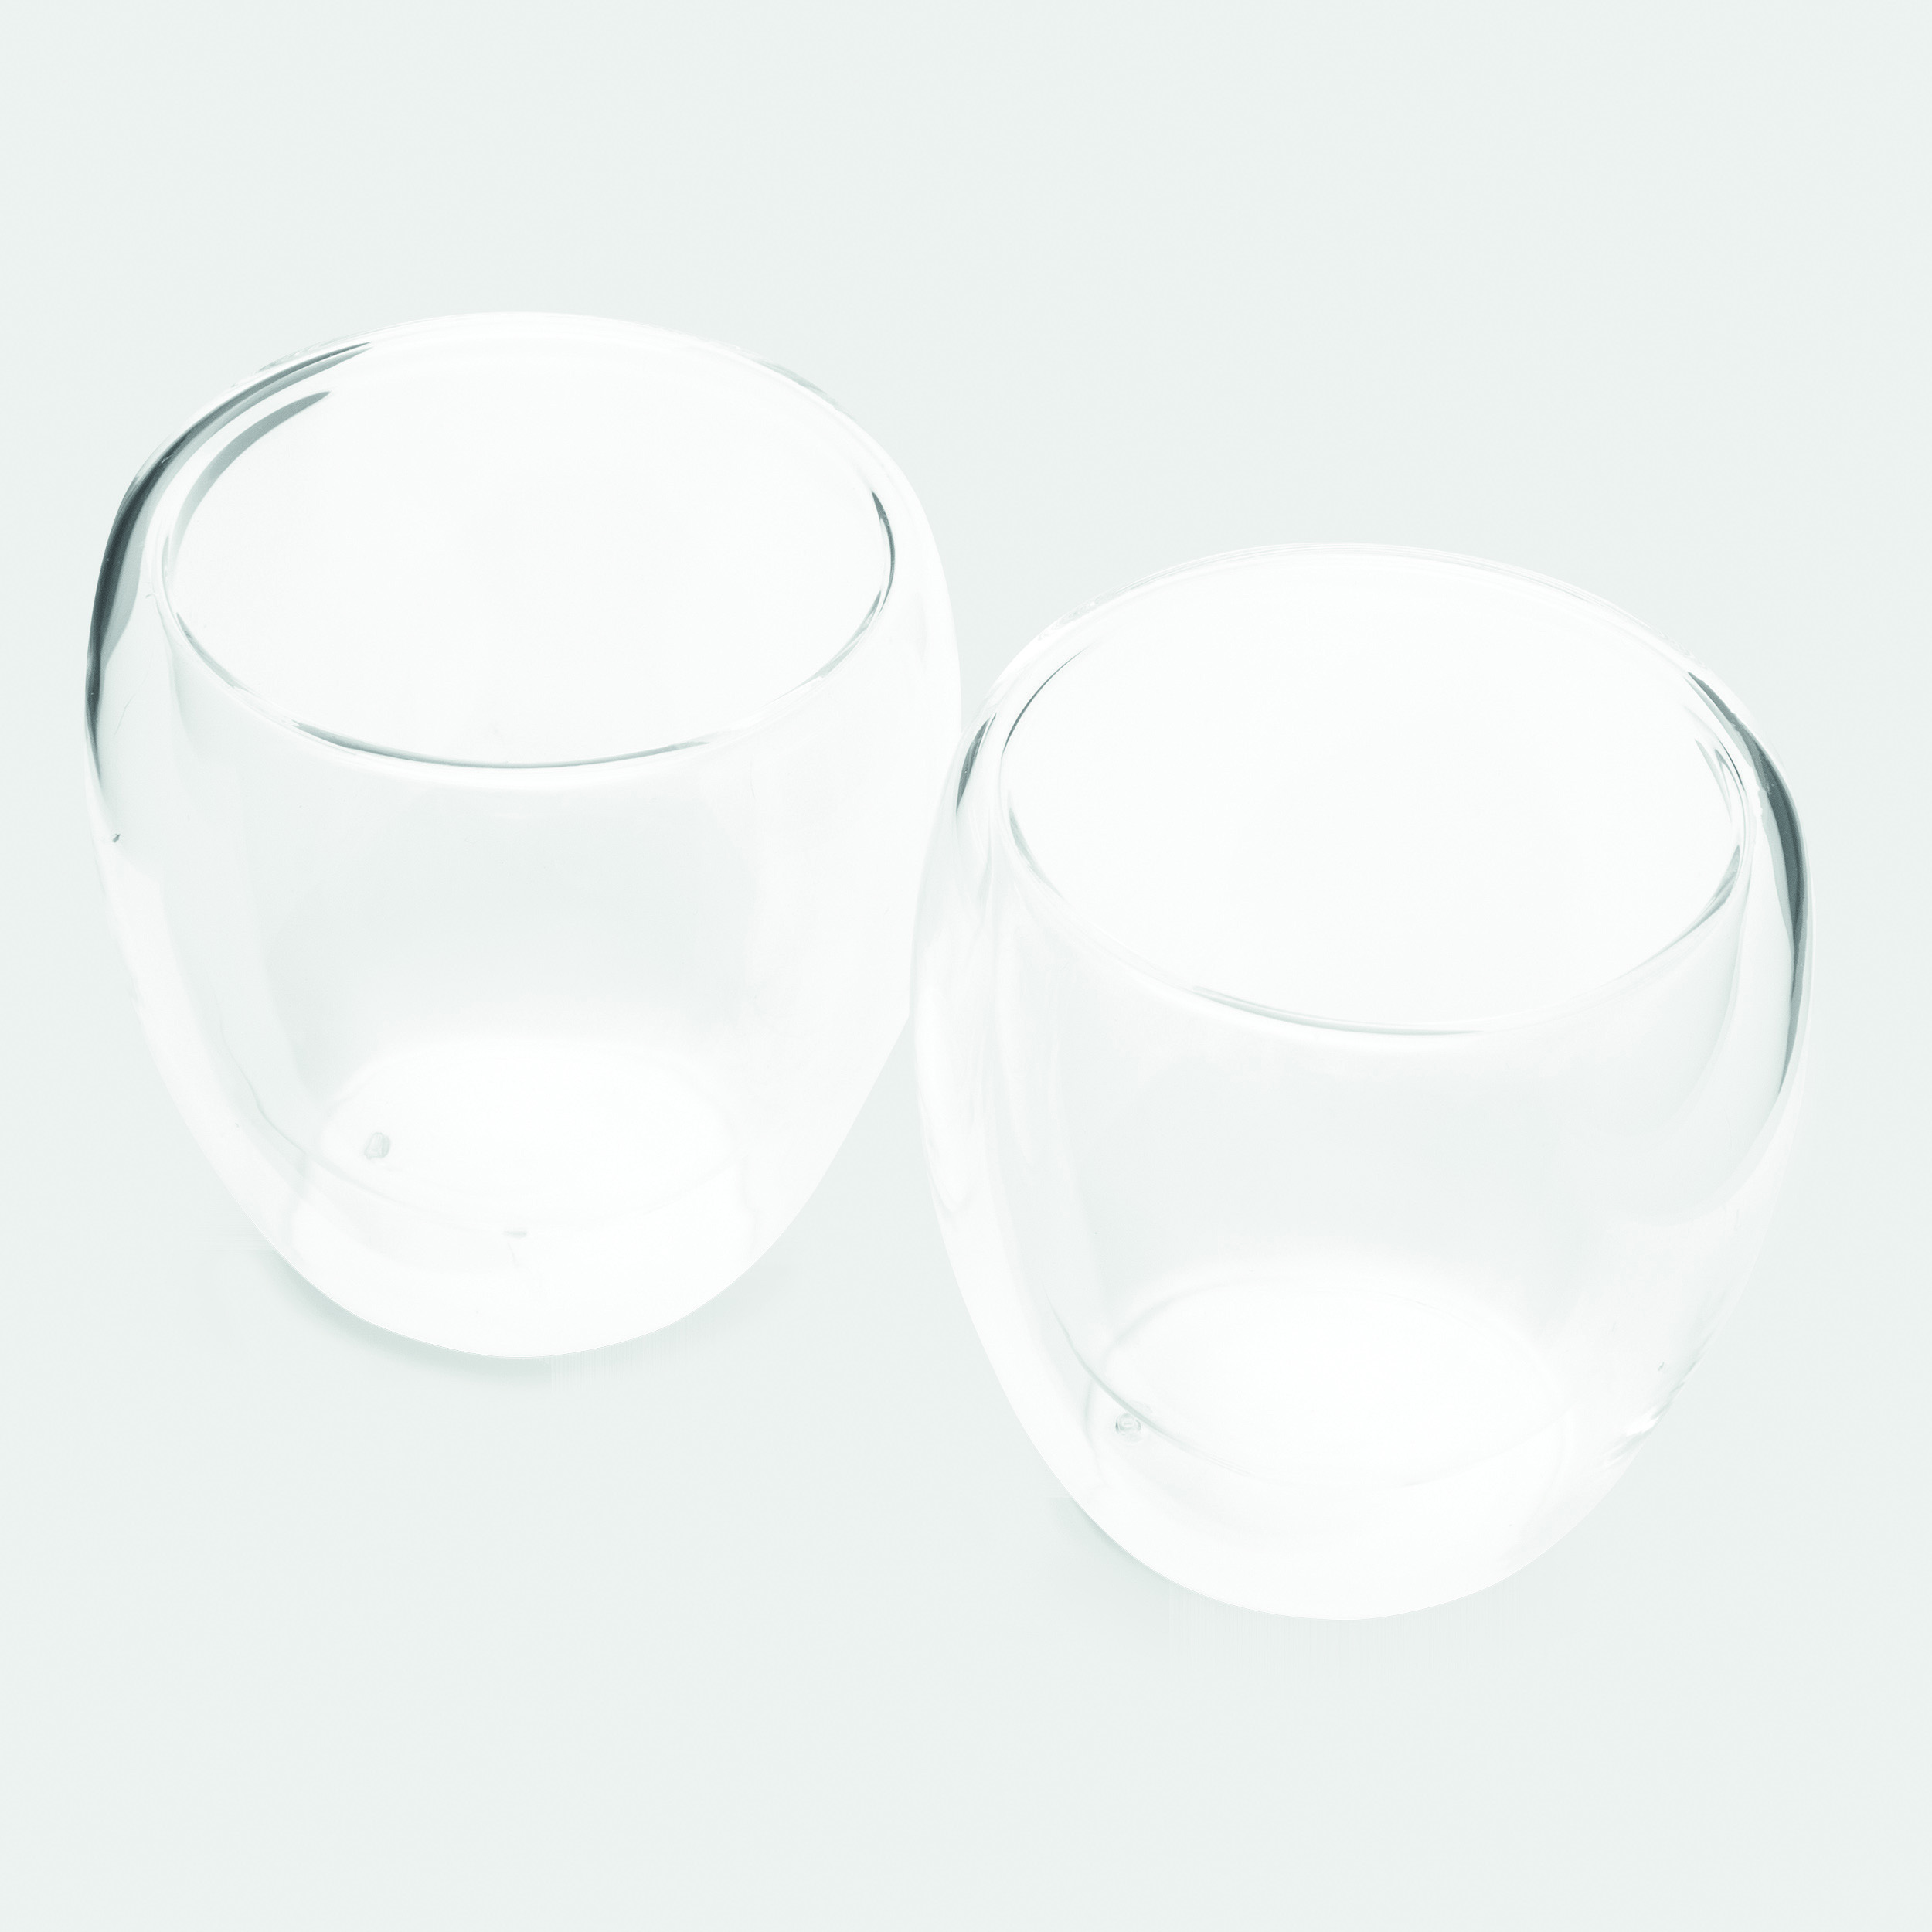 Gläser-Set DRINK LINE M, doppelwandig: 2er Set 56-0304251